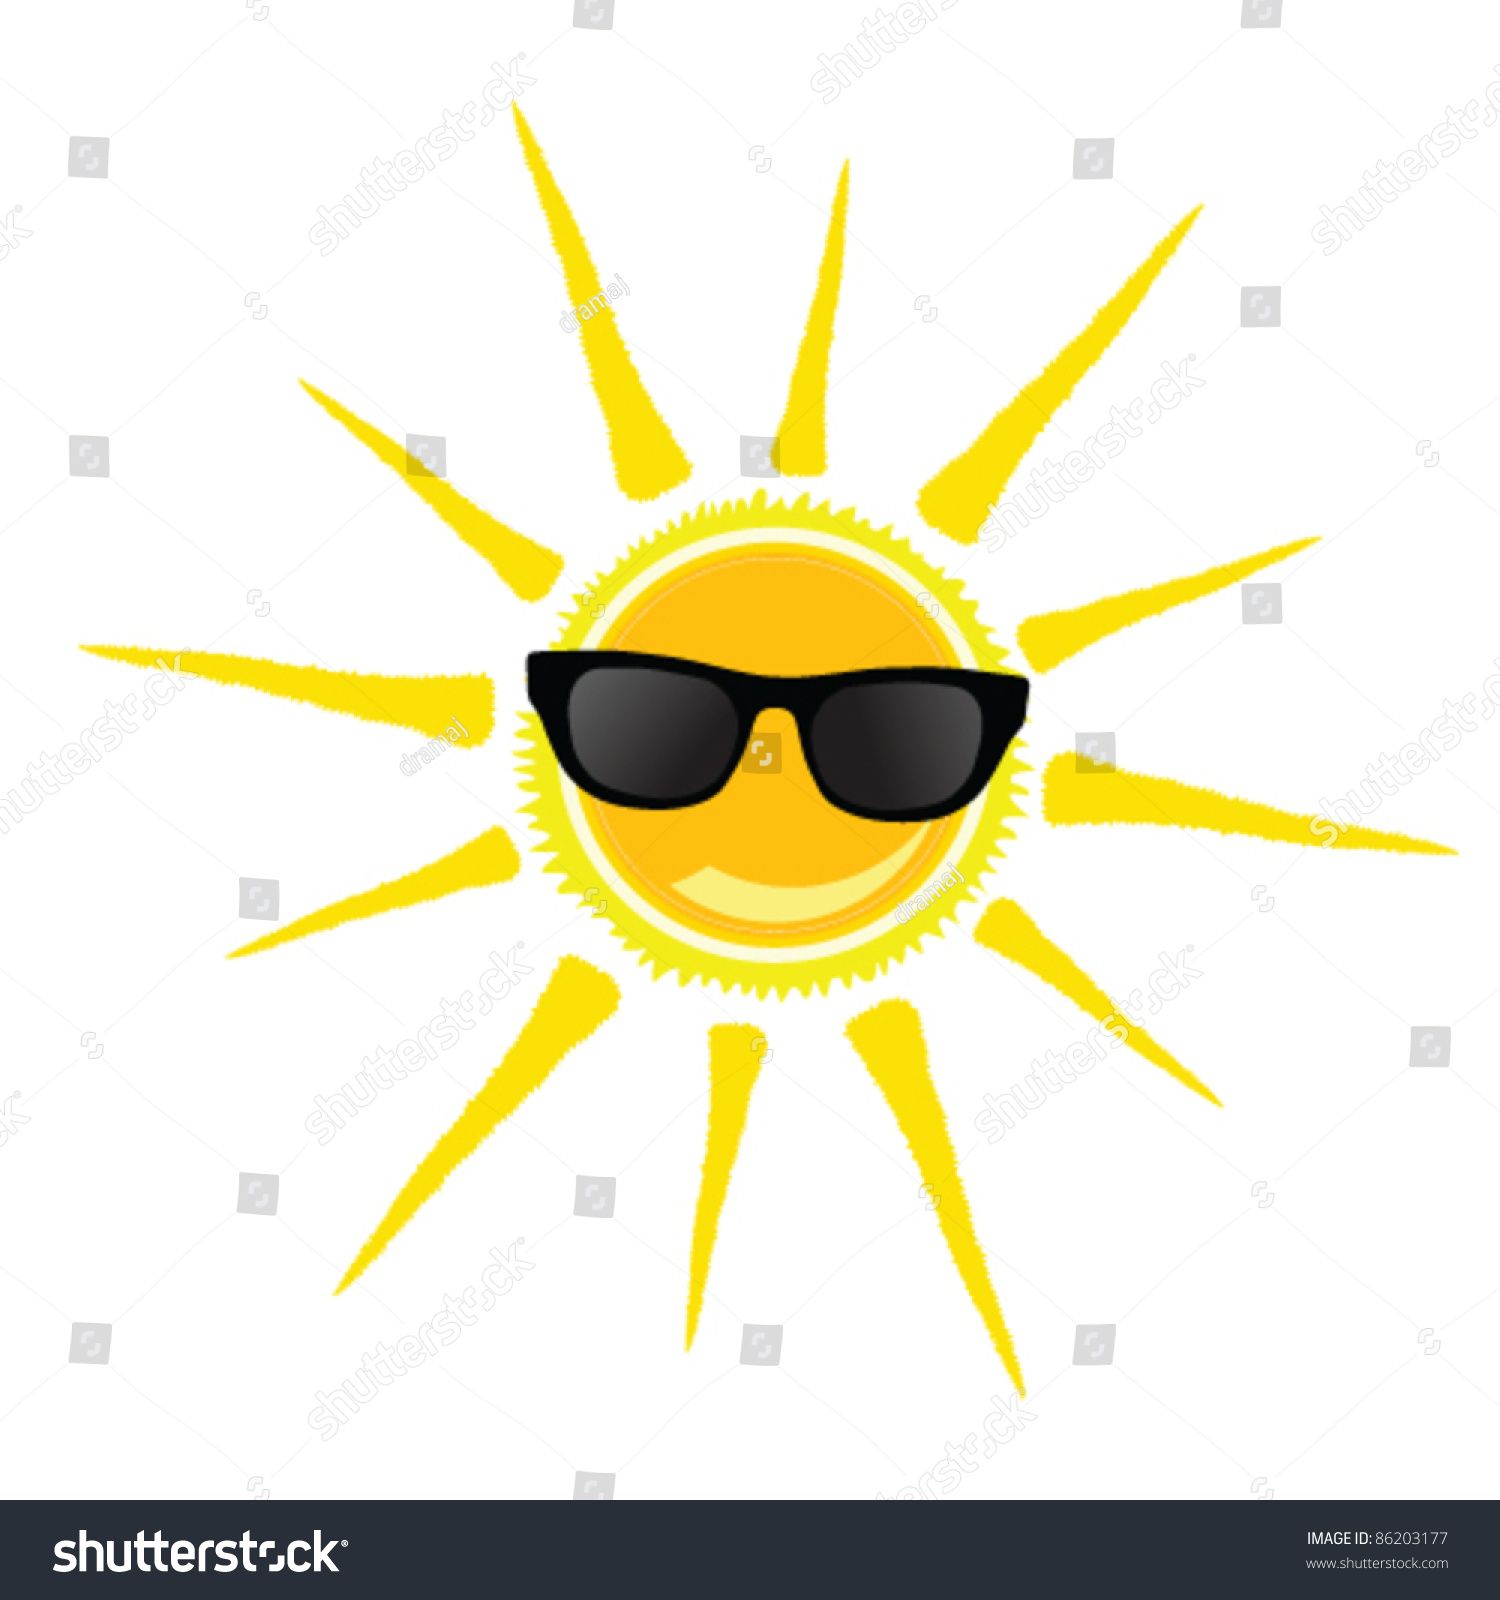 Sun With Black Glasses Art Vector Illustration - 86203177 : Shutterstock